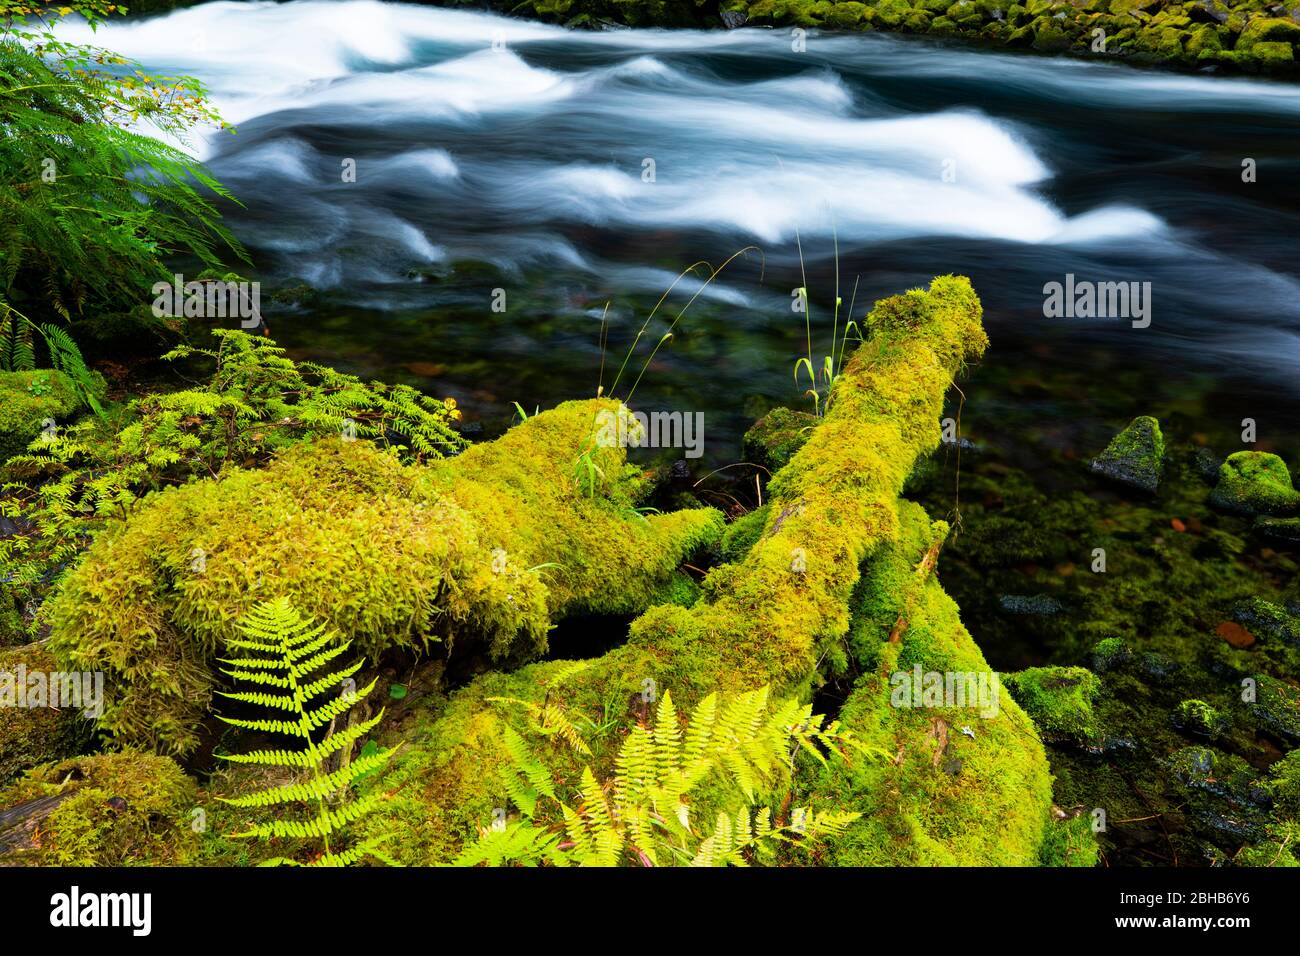 Cerca del río que fluye, Portland, Oregon, Estados Unidos Foto de stock